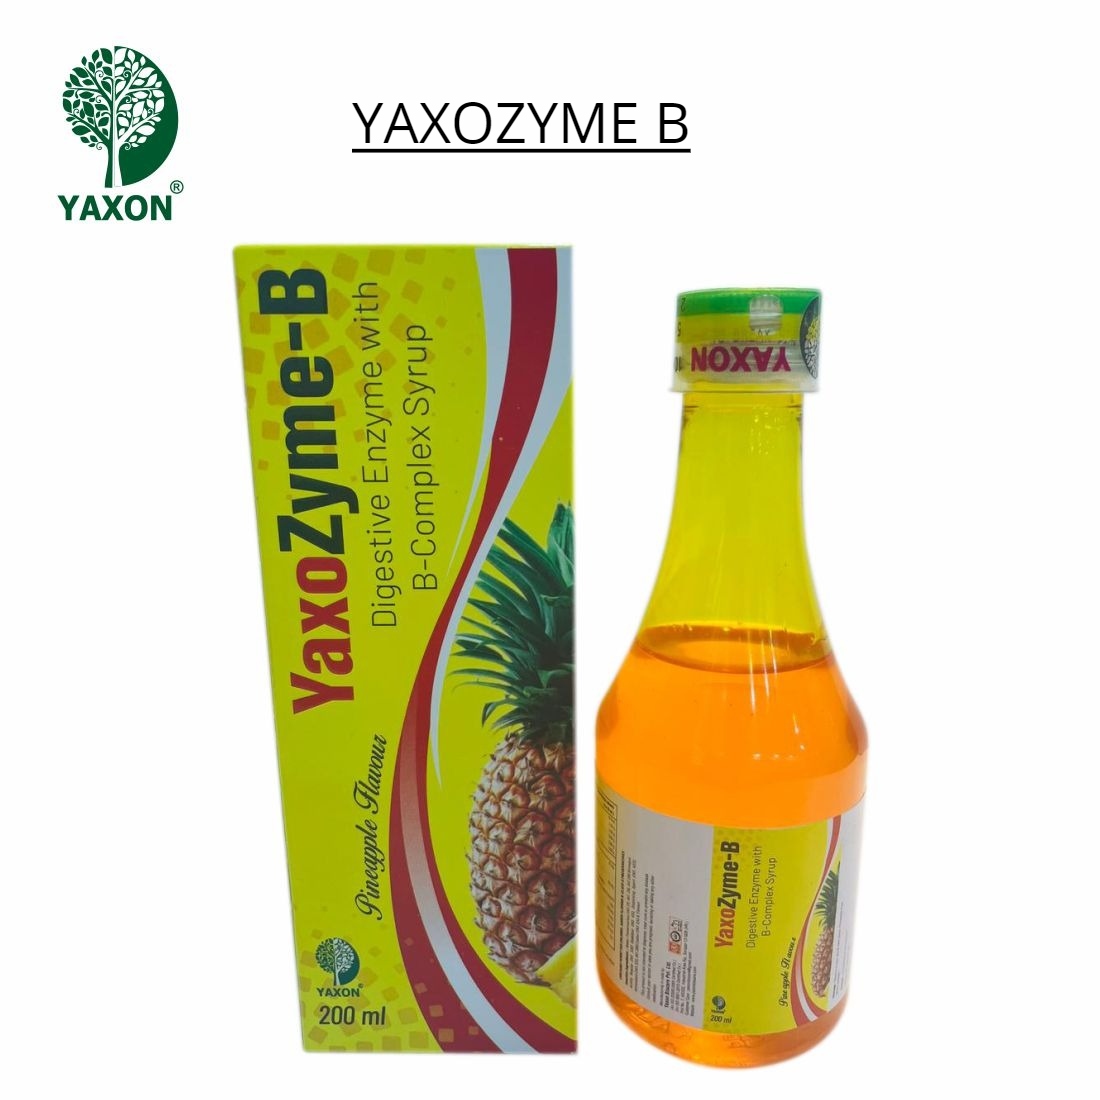 YAXON YAXOZYME B Syrup 200ml